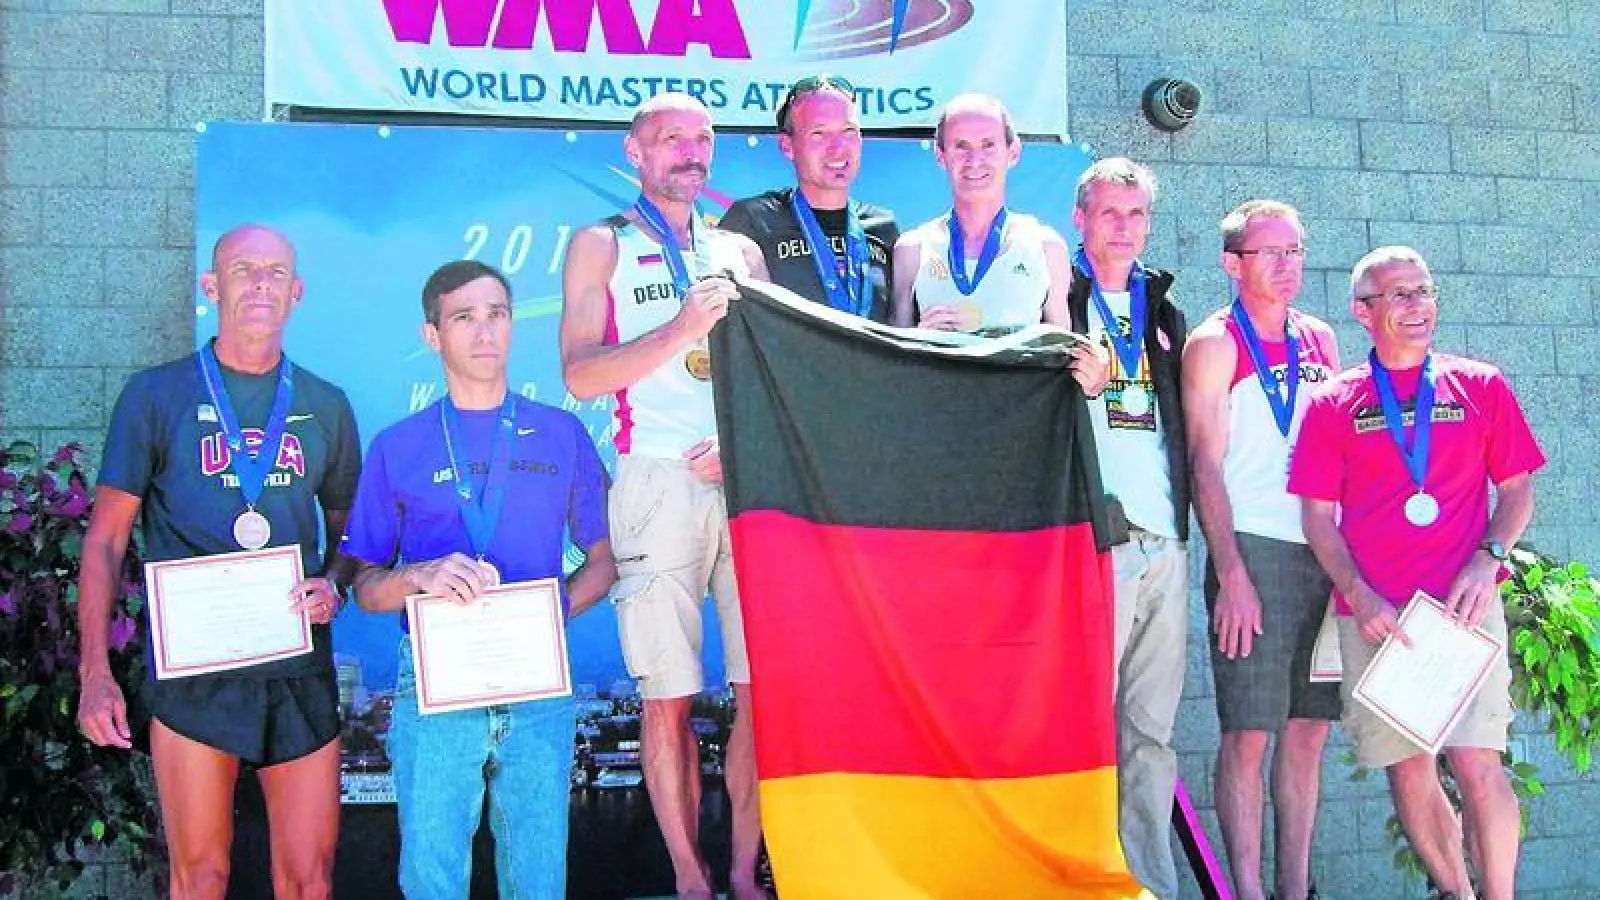 &lt;p&gt; &lt;x_bildunterschr&gt; &lt;b&gt;Stolz präsentiert Josef Oefle &lt;/b&gt; (vierter von rechts) seine Goldmedaille. Mit seinen deutschen Teamkollegen Uwe Bernd und Frank Loschner wurde der Unterwittelsbacher Mannschaftsweltmeister im Marathon. &lt;tab/&gt;Fotos: privat &lt;/x_bildunterschr&gt; &lt;/p&gt;